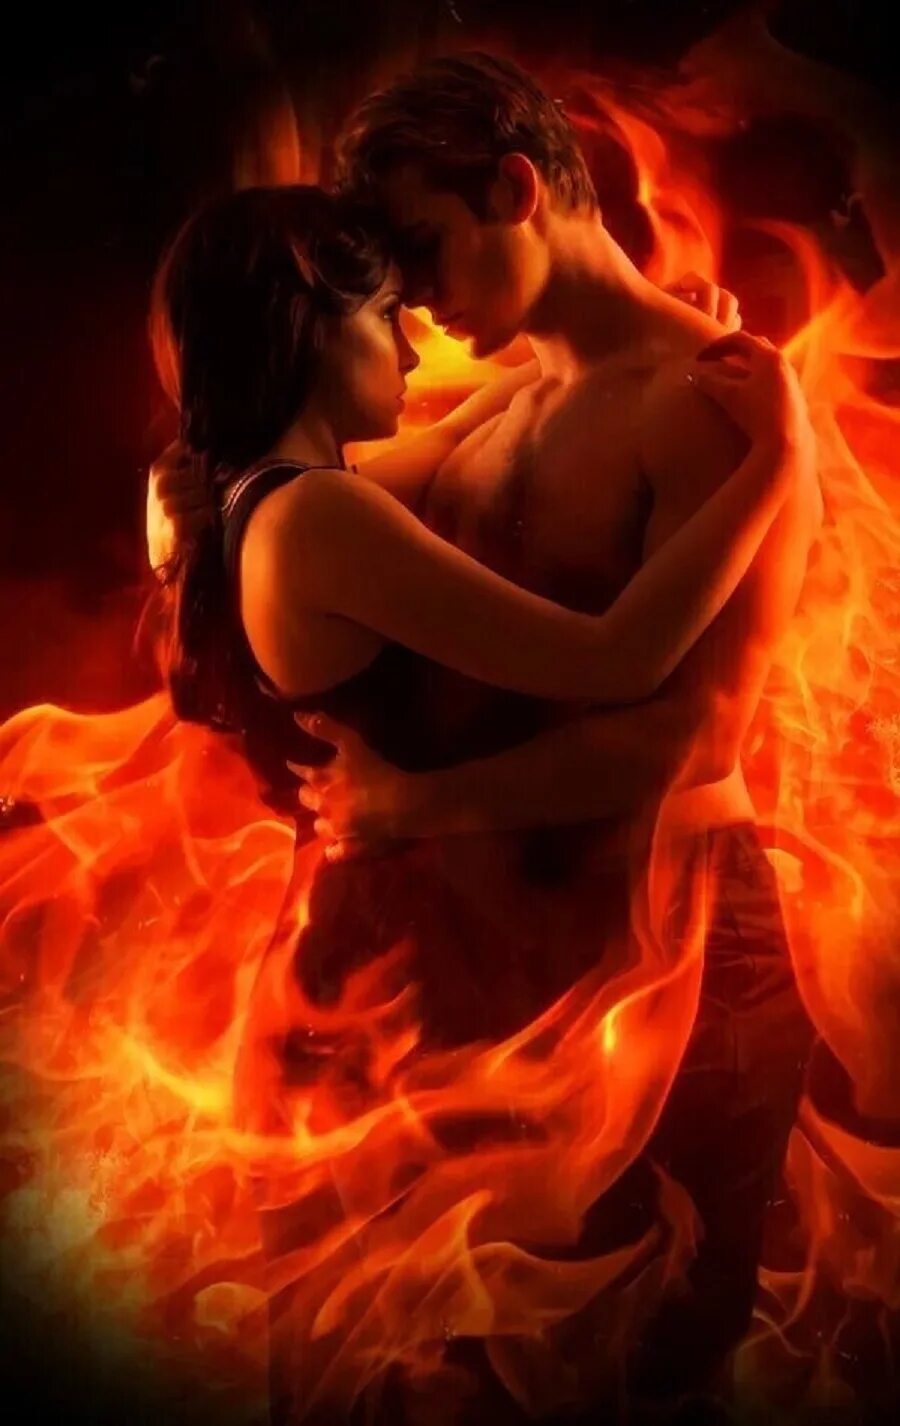 Горячая любовь. Мужчина и женщина в огне. Красивая страсть. Любовь и страсть.